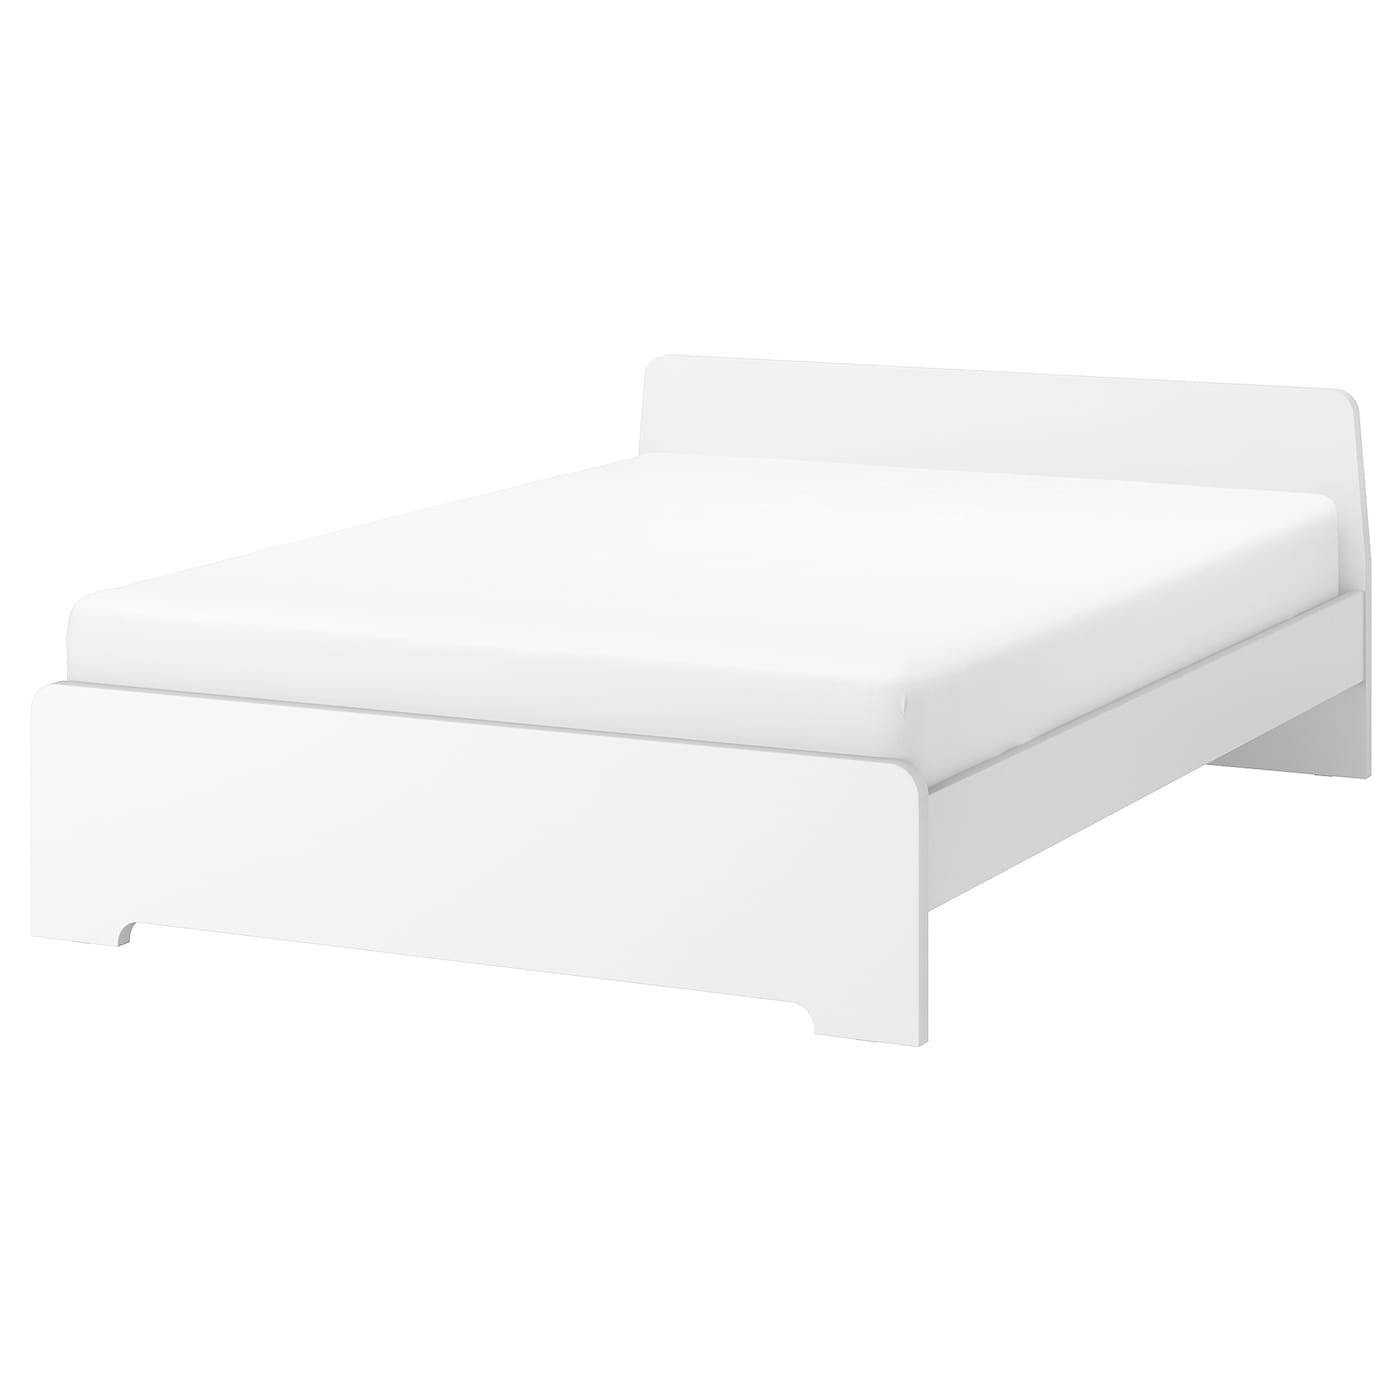 Двуспальная кровать - IKEA ASKVOLL/LINDBADEN, 200х140 см, белый, АСКВОЛЬ/ЛИНДБАДЕН ИКЕА